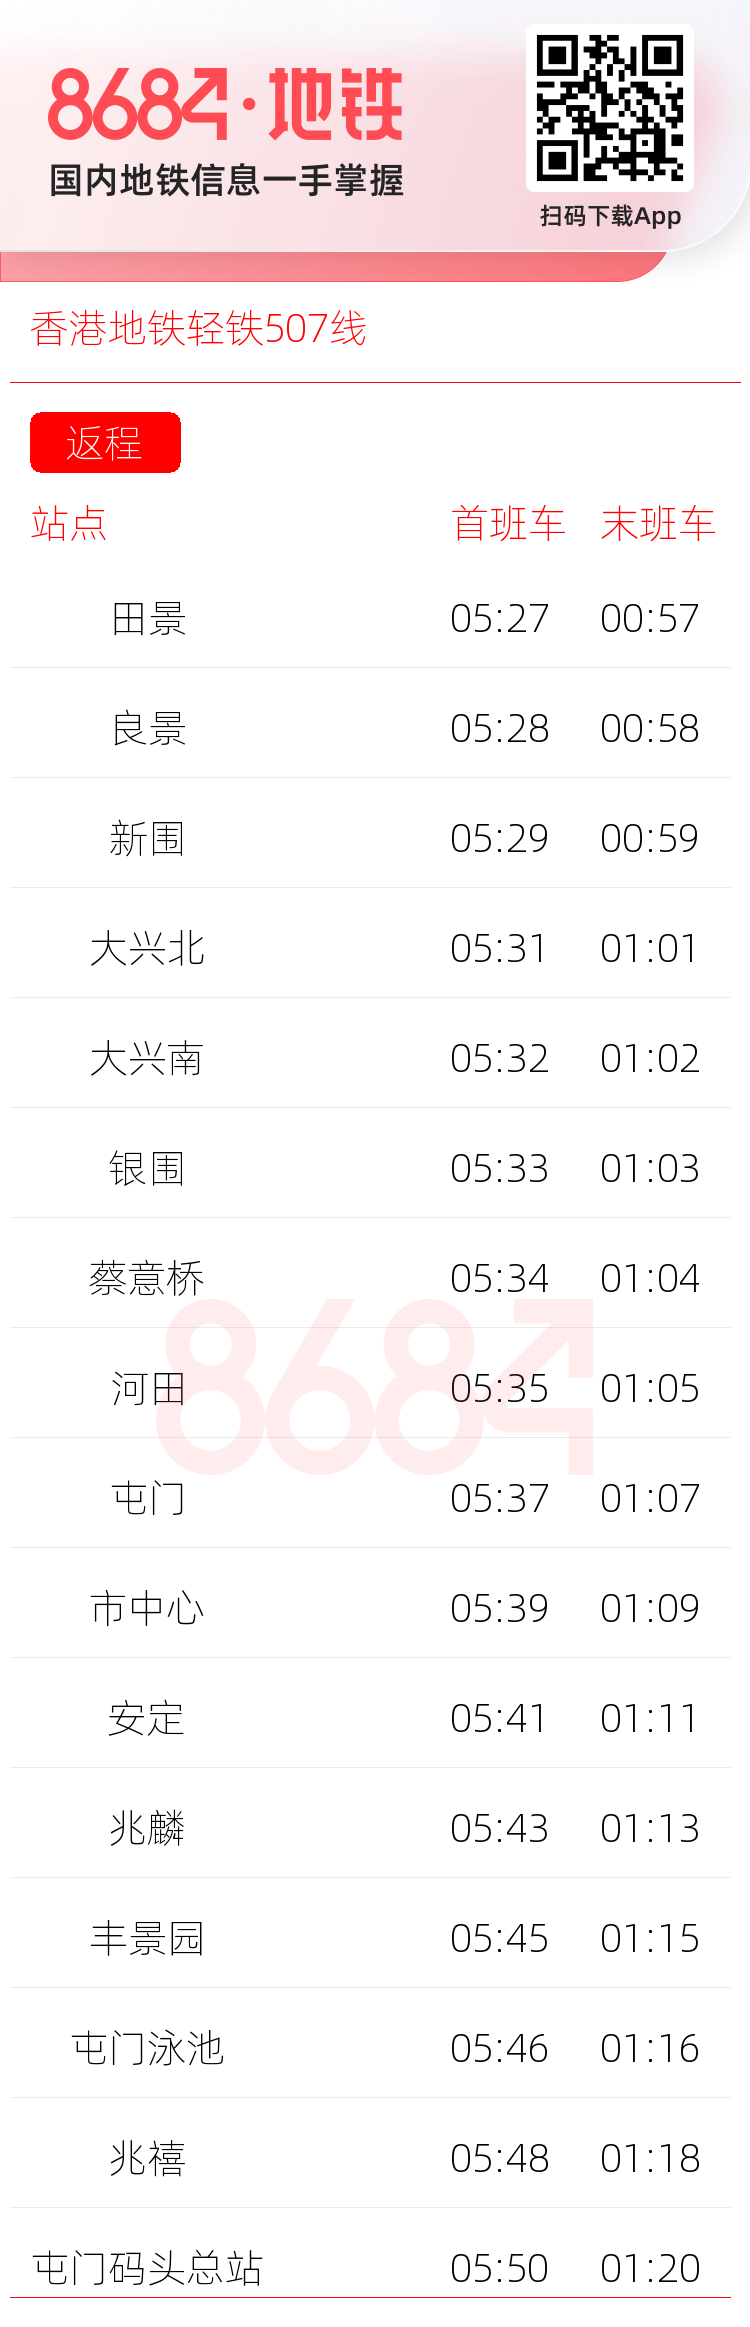 香港地铁轻铁507线运营时间表